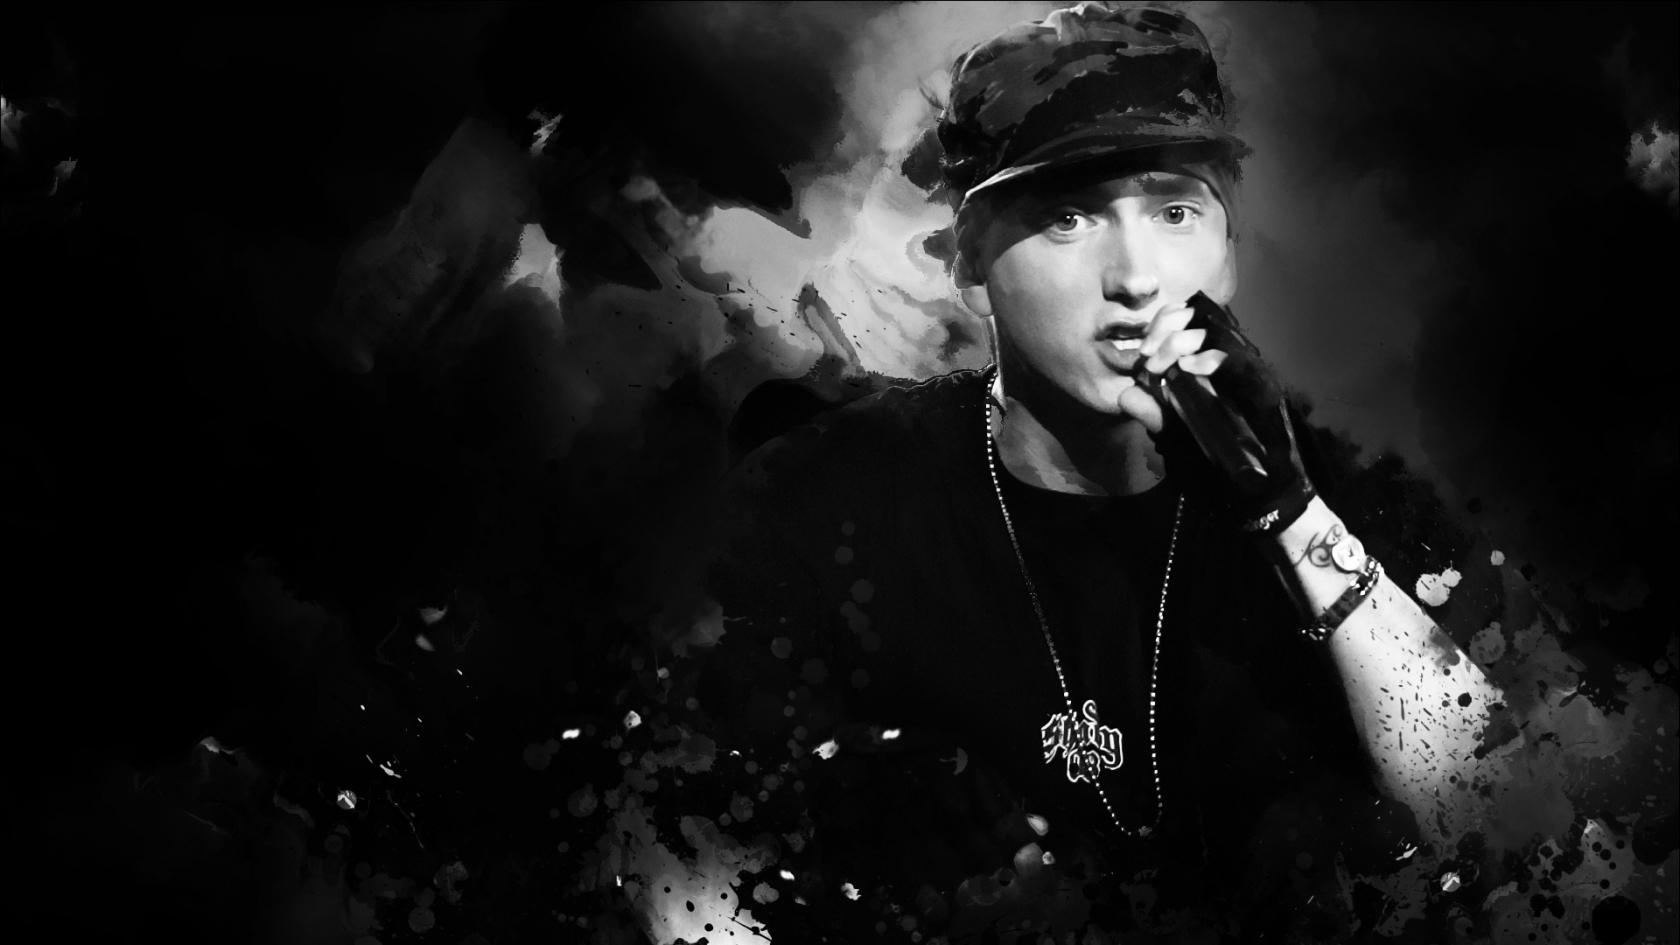 Eminem Fan Art for 1680 x 945 HDTV resolution